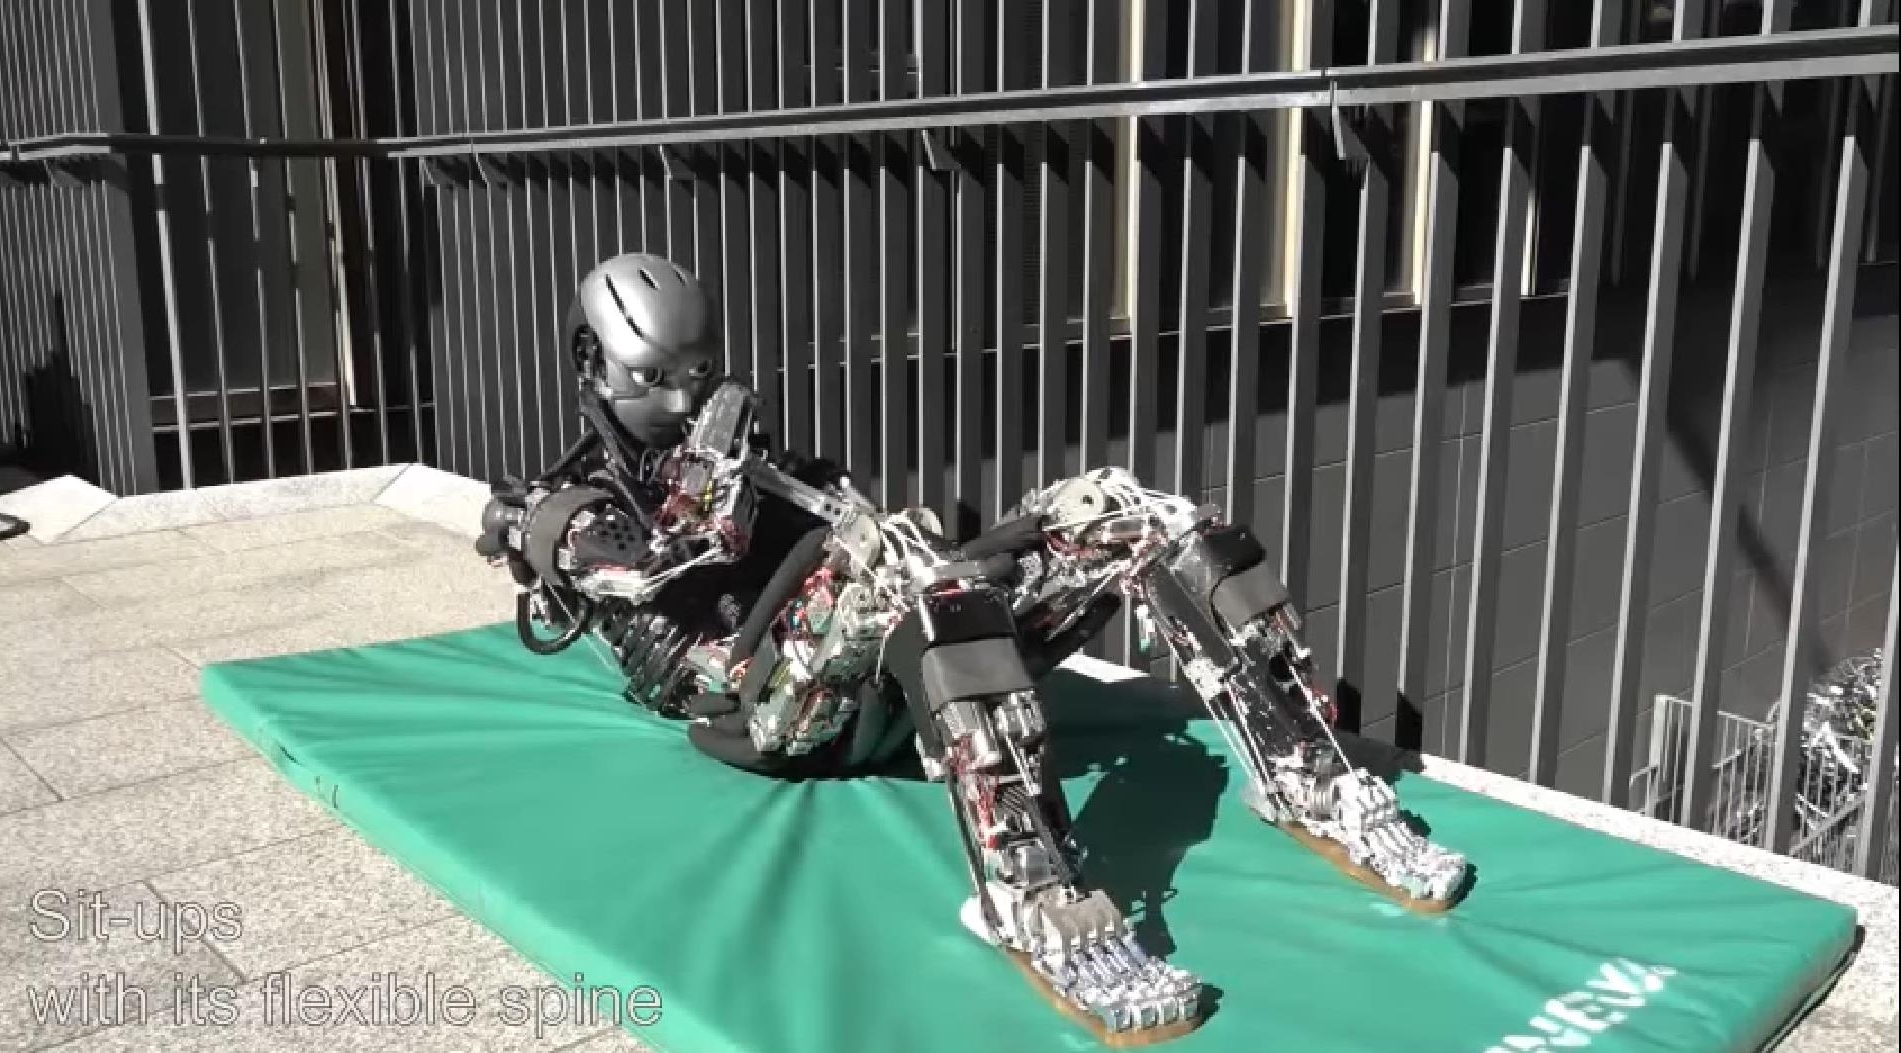 ‘วิดพื้น ซิทอัพ ยืดกล้ามเนื้อ’ ญี่ปุ่นพัฒนาหุ่นยนต์นักออกกำลังกาย ที่มี ‘เหงื่อ’ ไหลออกมาได้ด้วย